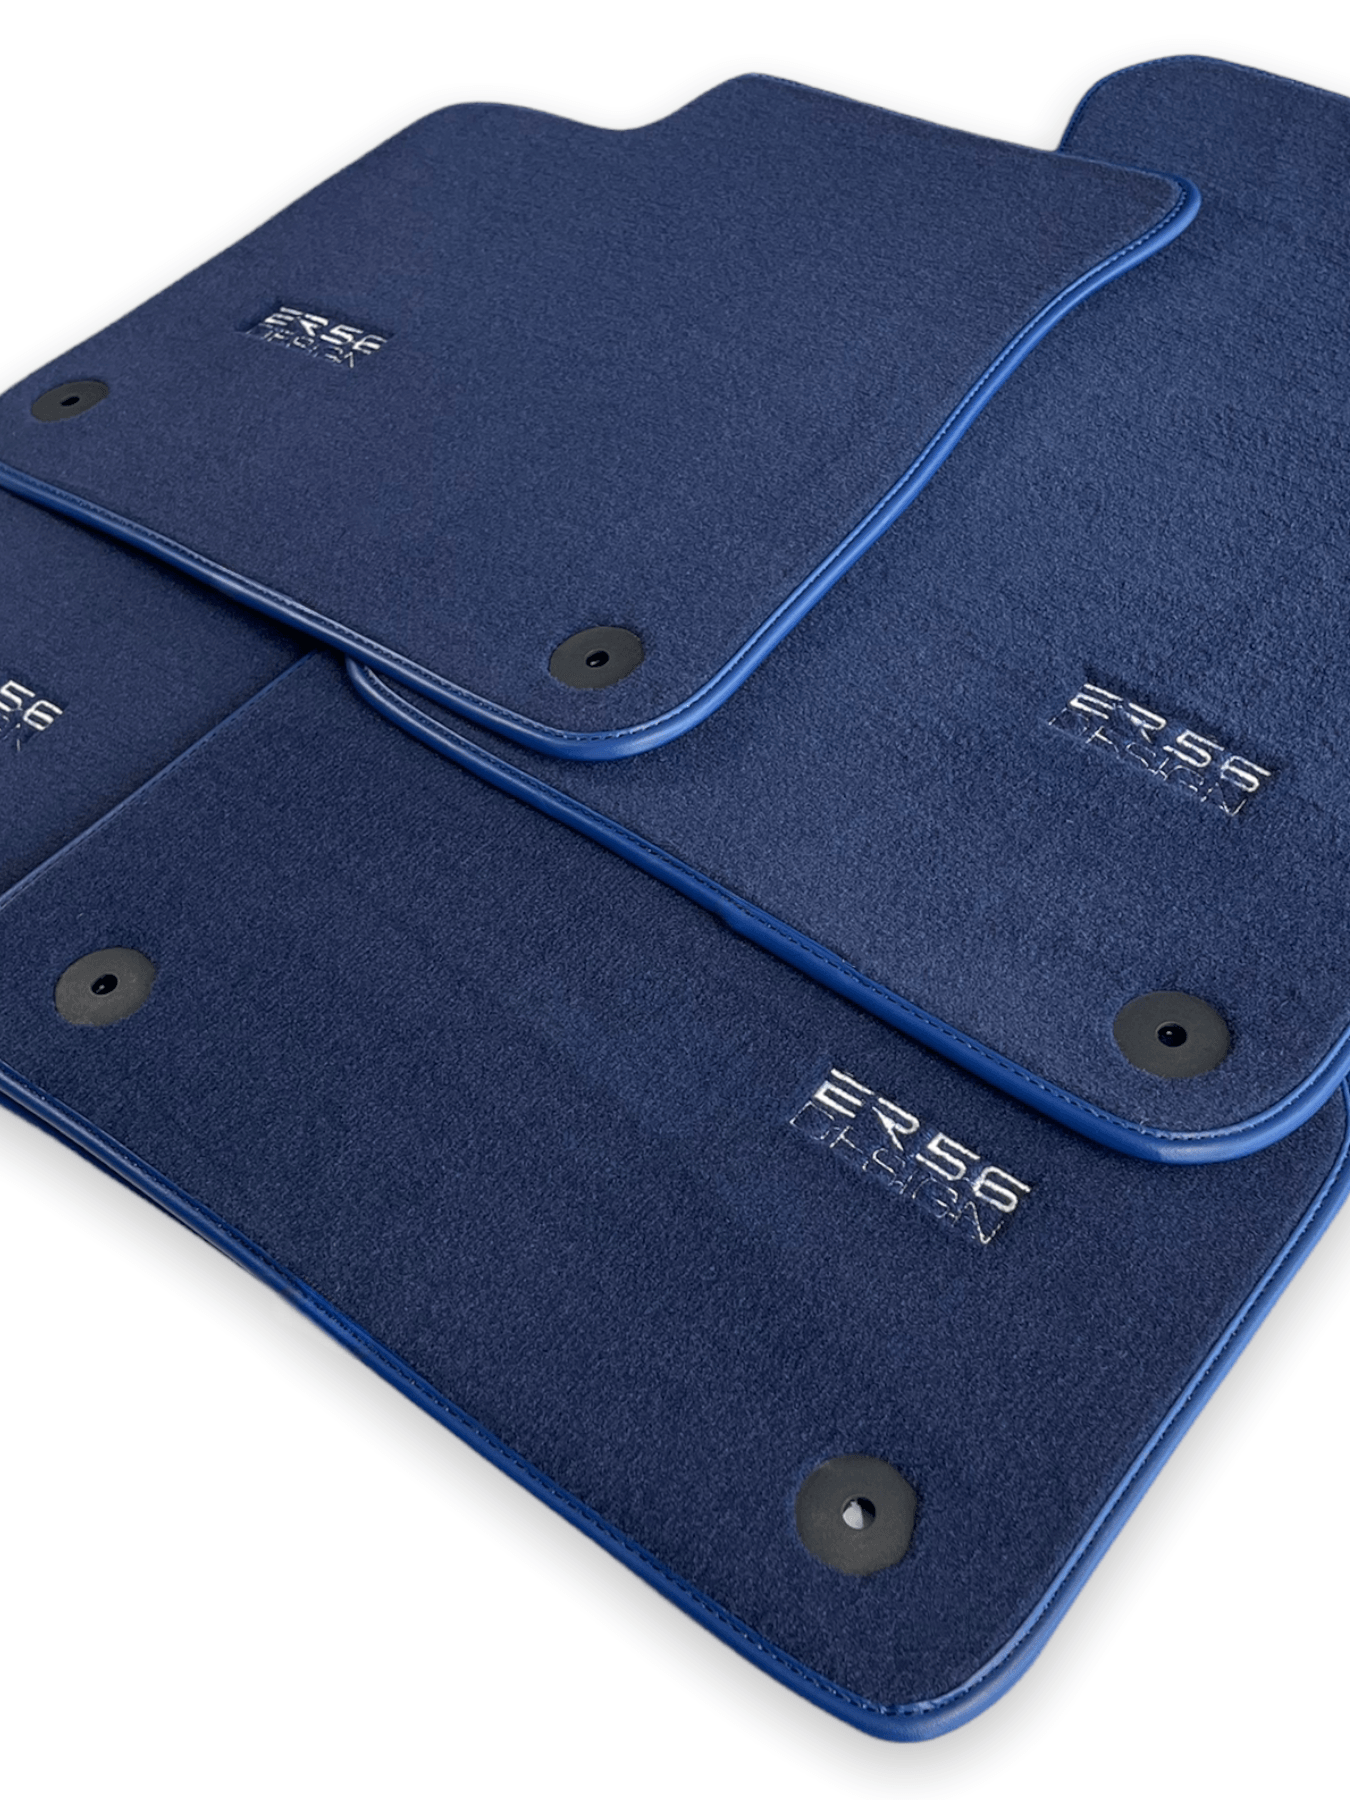 Dark Blue Floor Mats for Audi Q7 4L (2006-2015) | ER56 Design